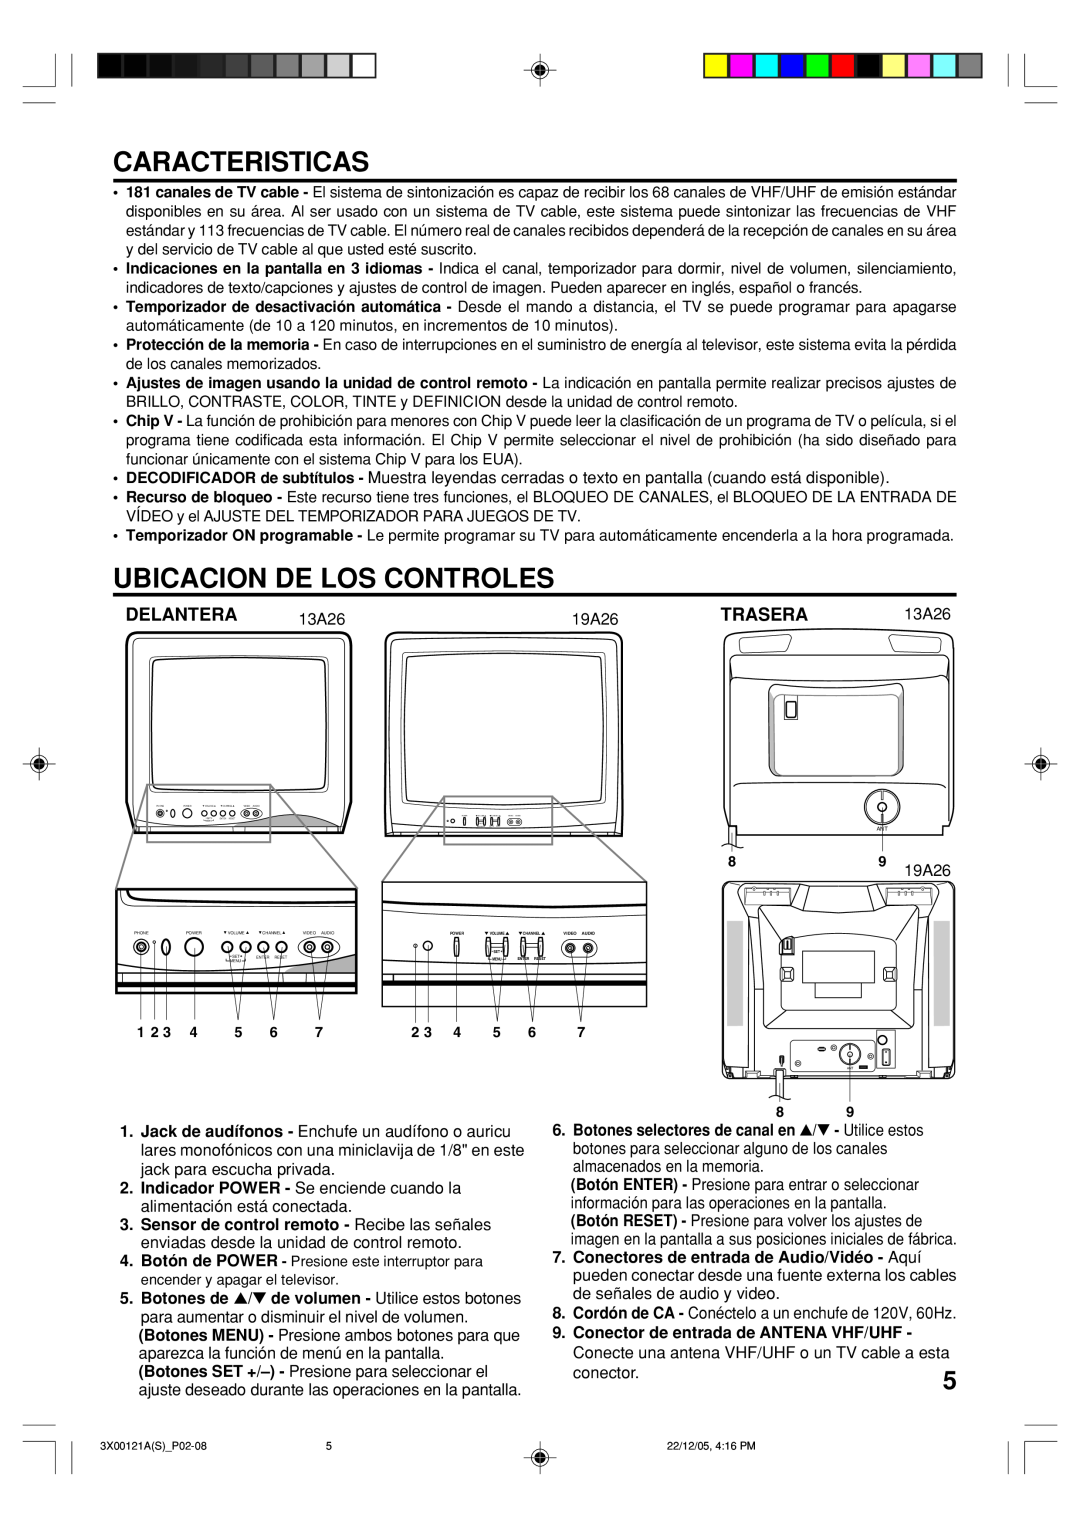 Toshiba 13A26 manual Caracteristicas, Ubicacion De Los Controles, Delantera, Trasera 